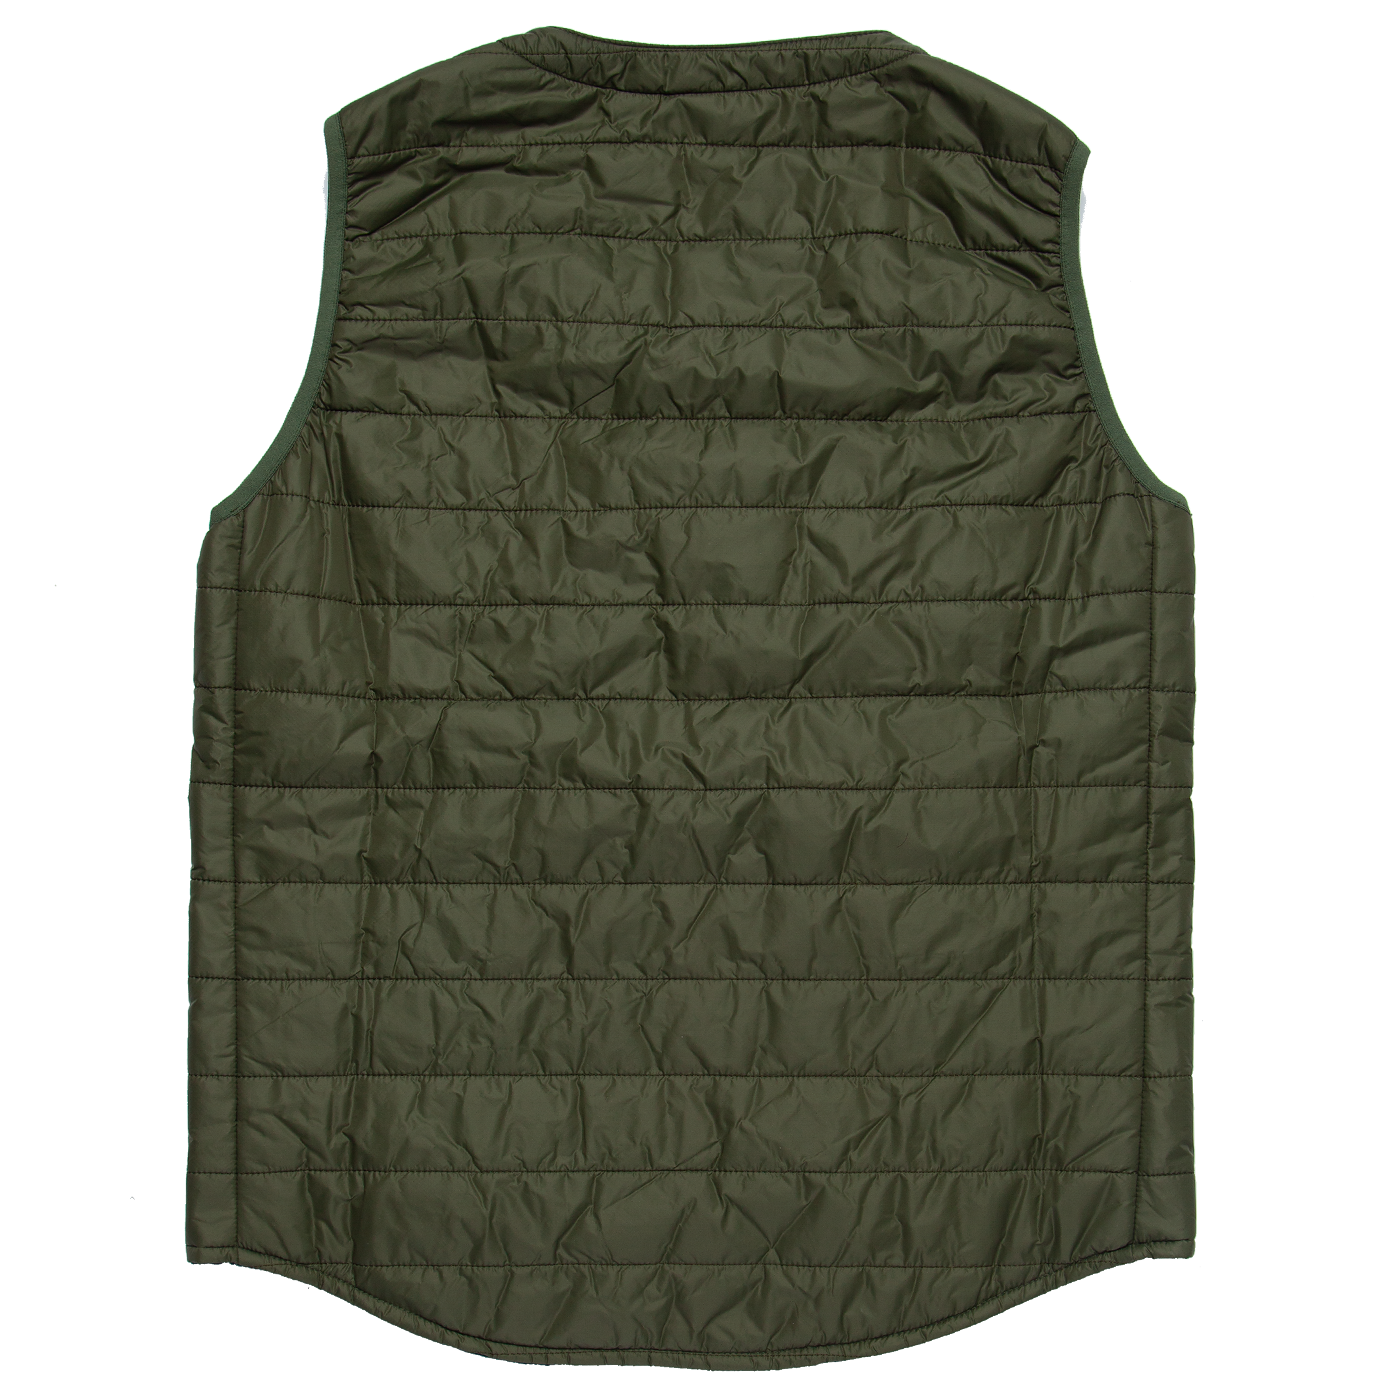 Packable Primaloft Vest - Olive